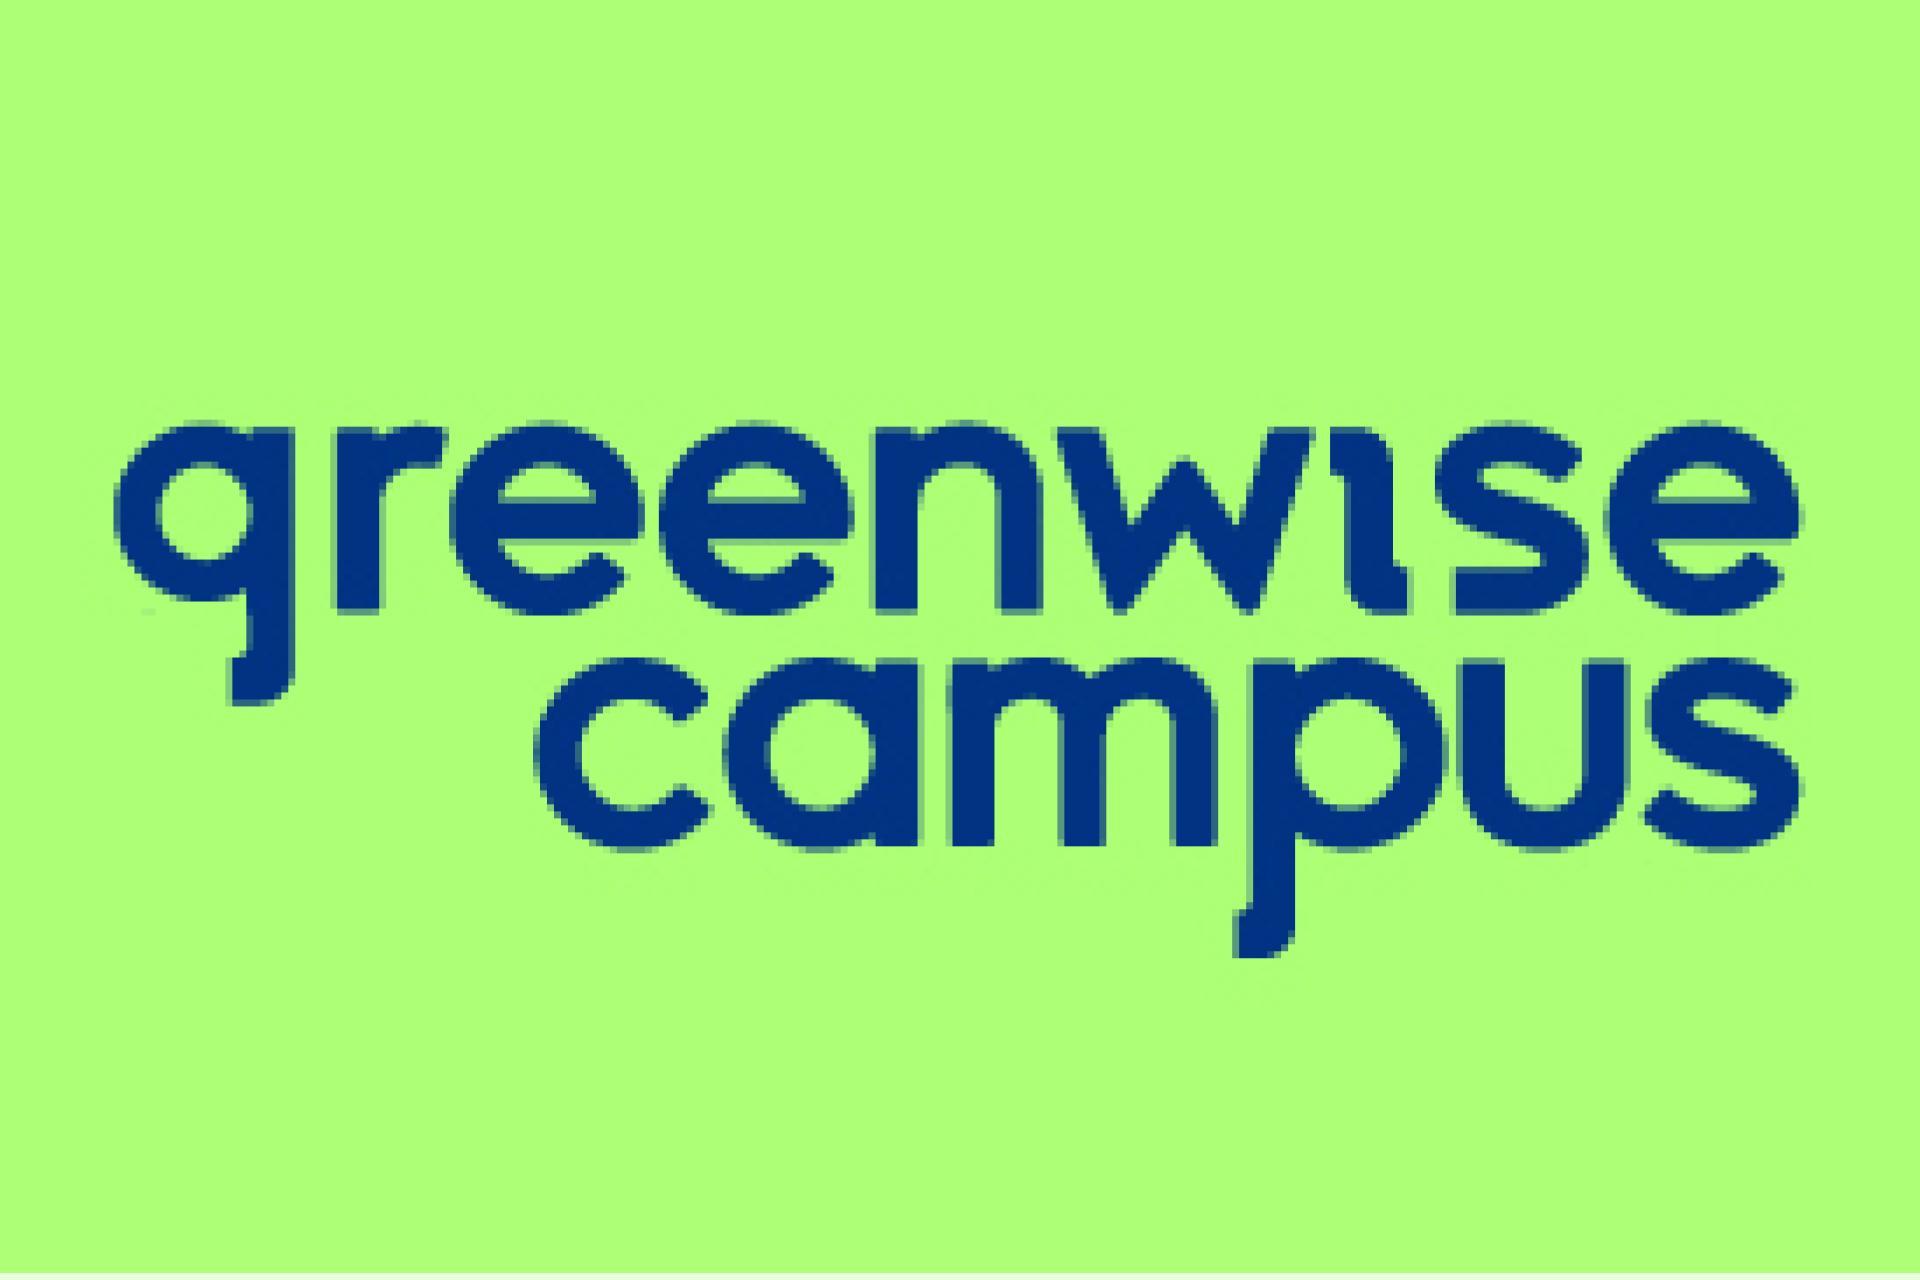 Greenwise Campus uitgeschreven in groen en blauwe kleuren